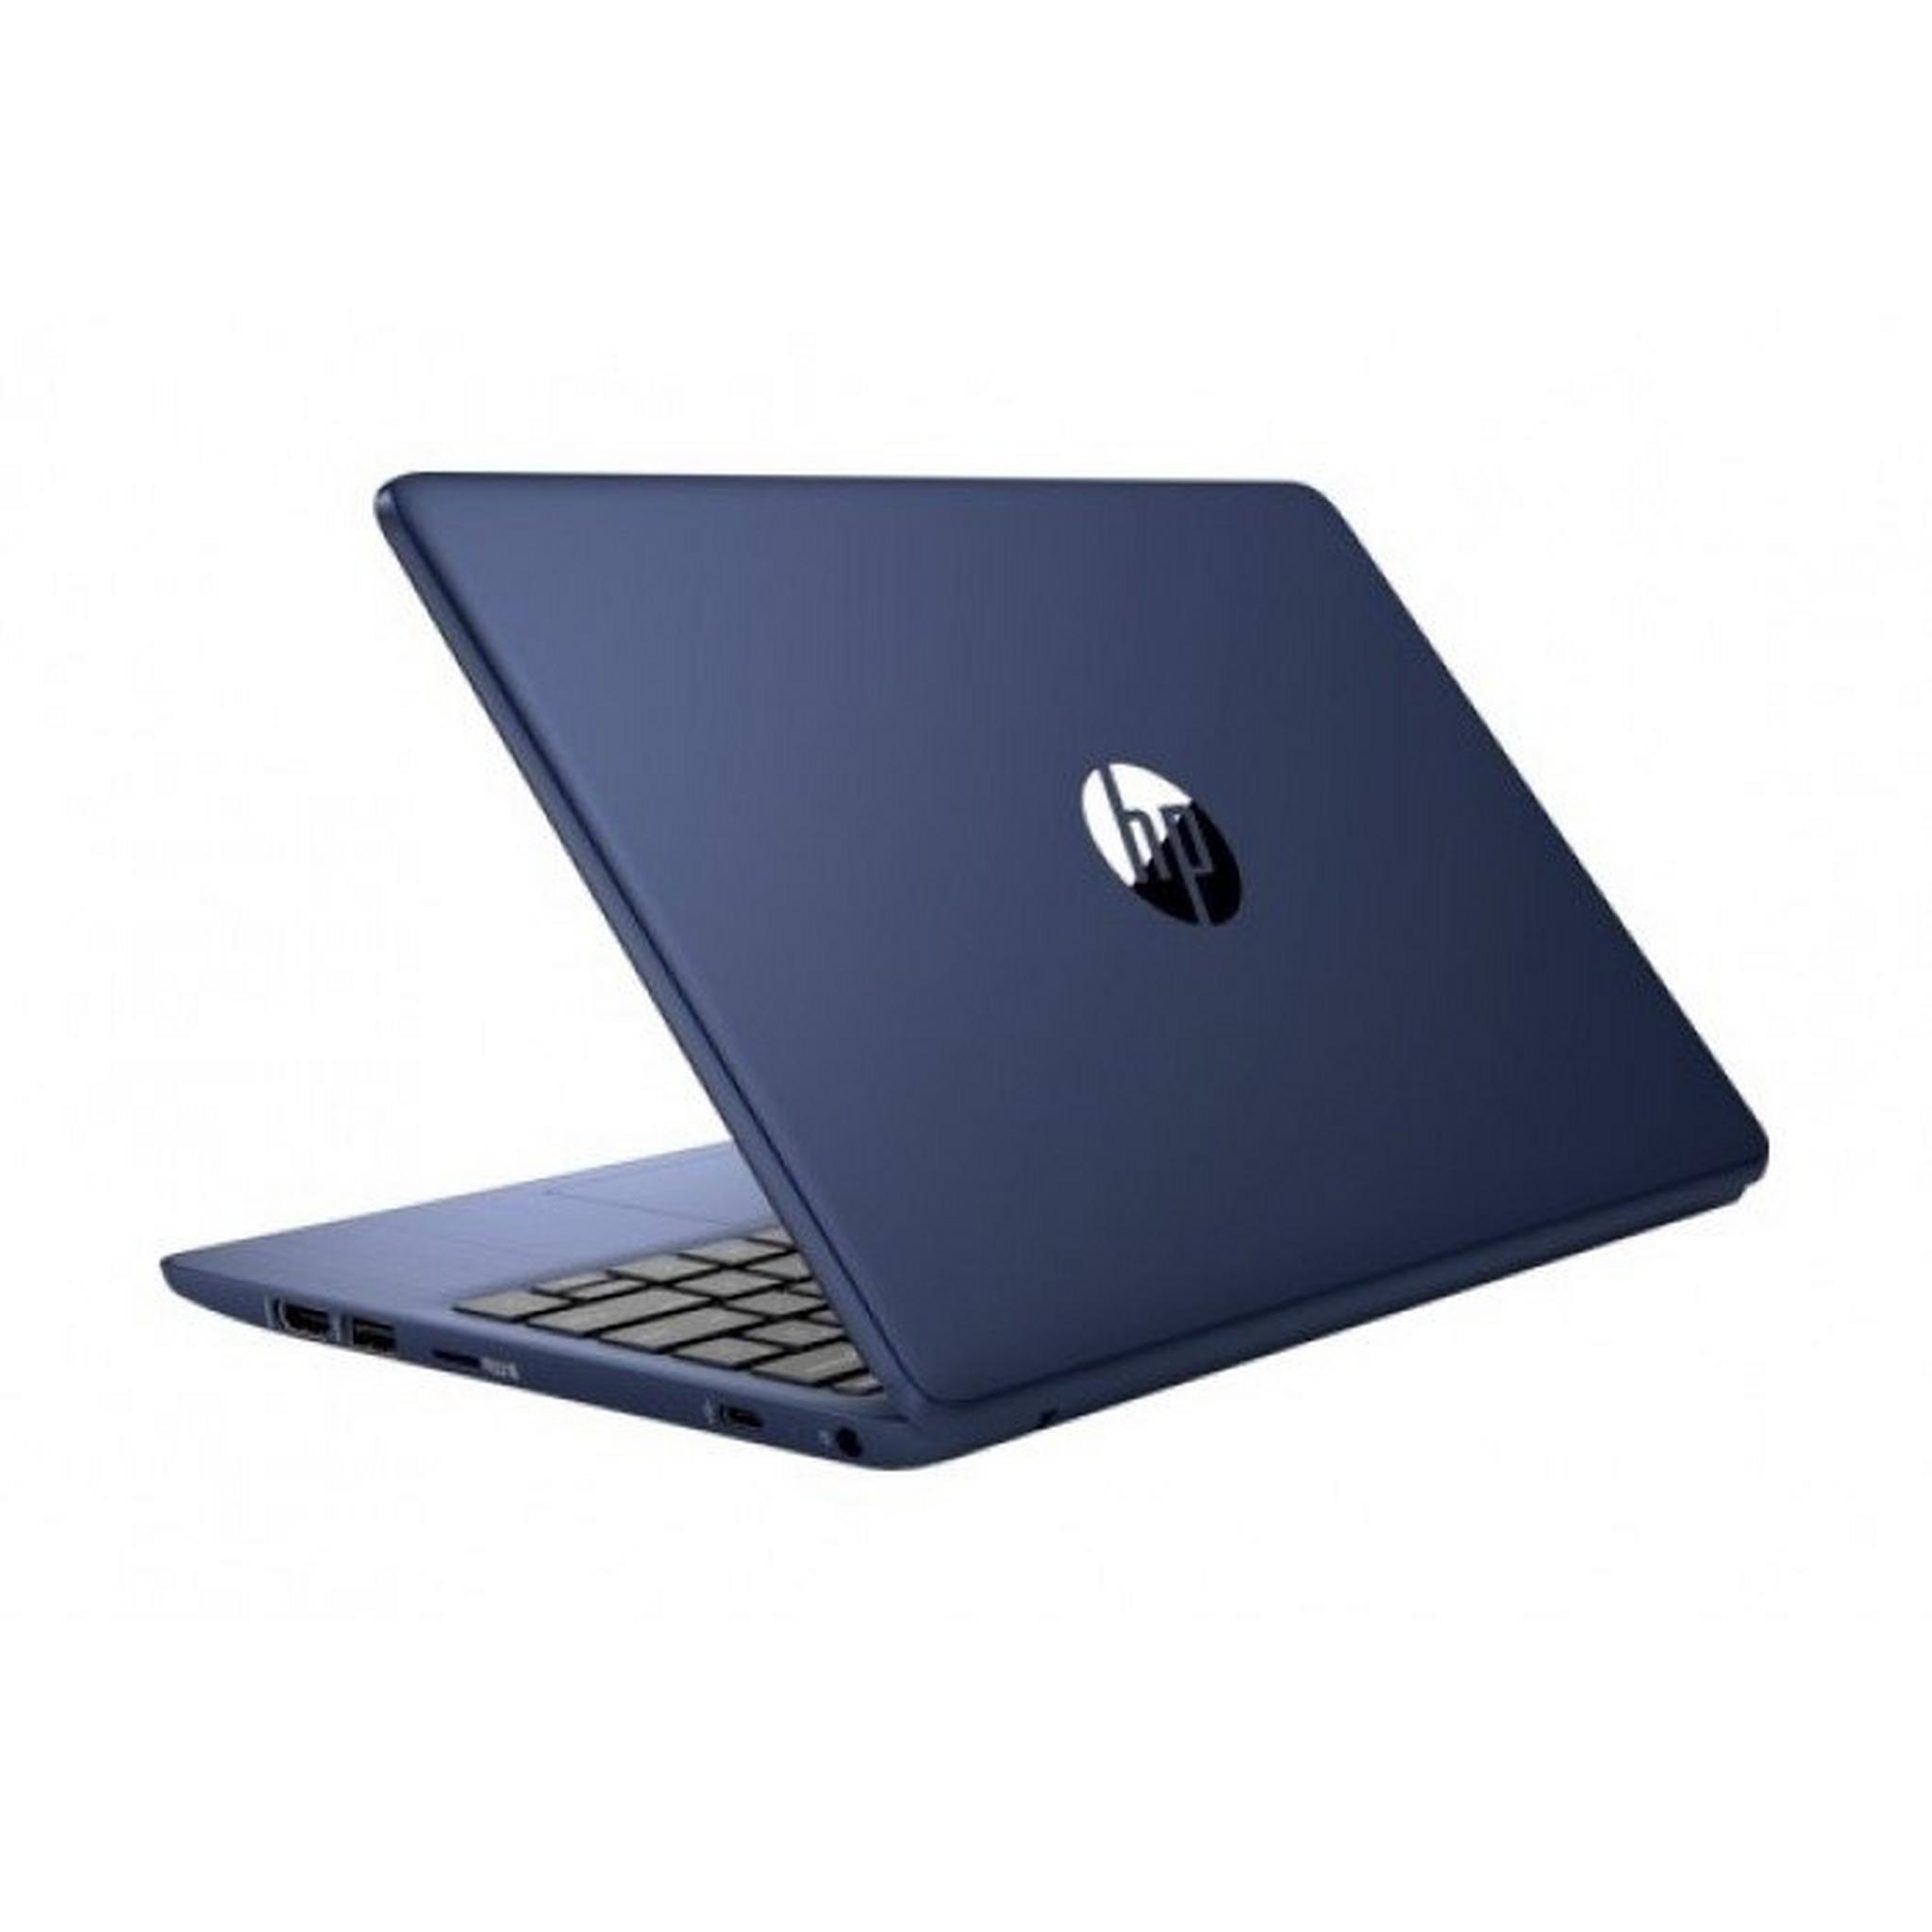 HP Stream Intel Celeron N4020 4GB RAM, 64GB SSD, 11.6-inch Laptop - Blue